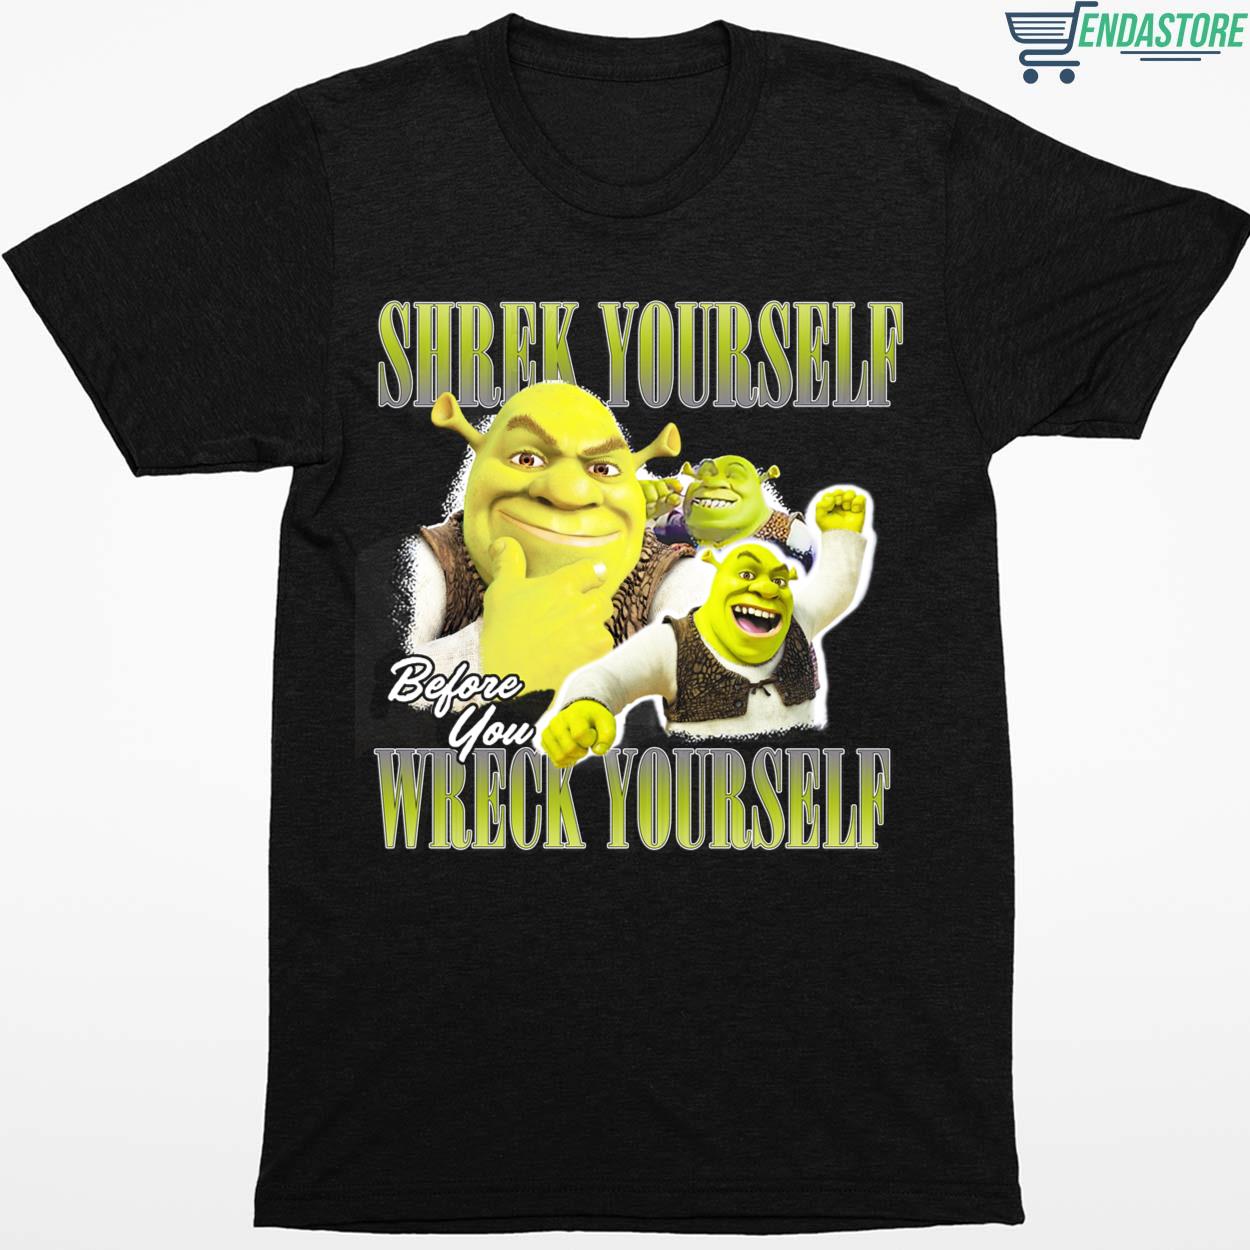 Shrek Yourself Before You Wreck Yourself Sweatshirt - Endastore.com